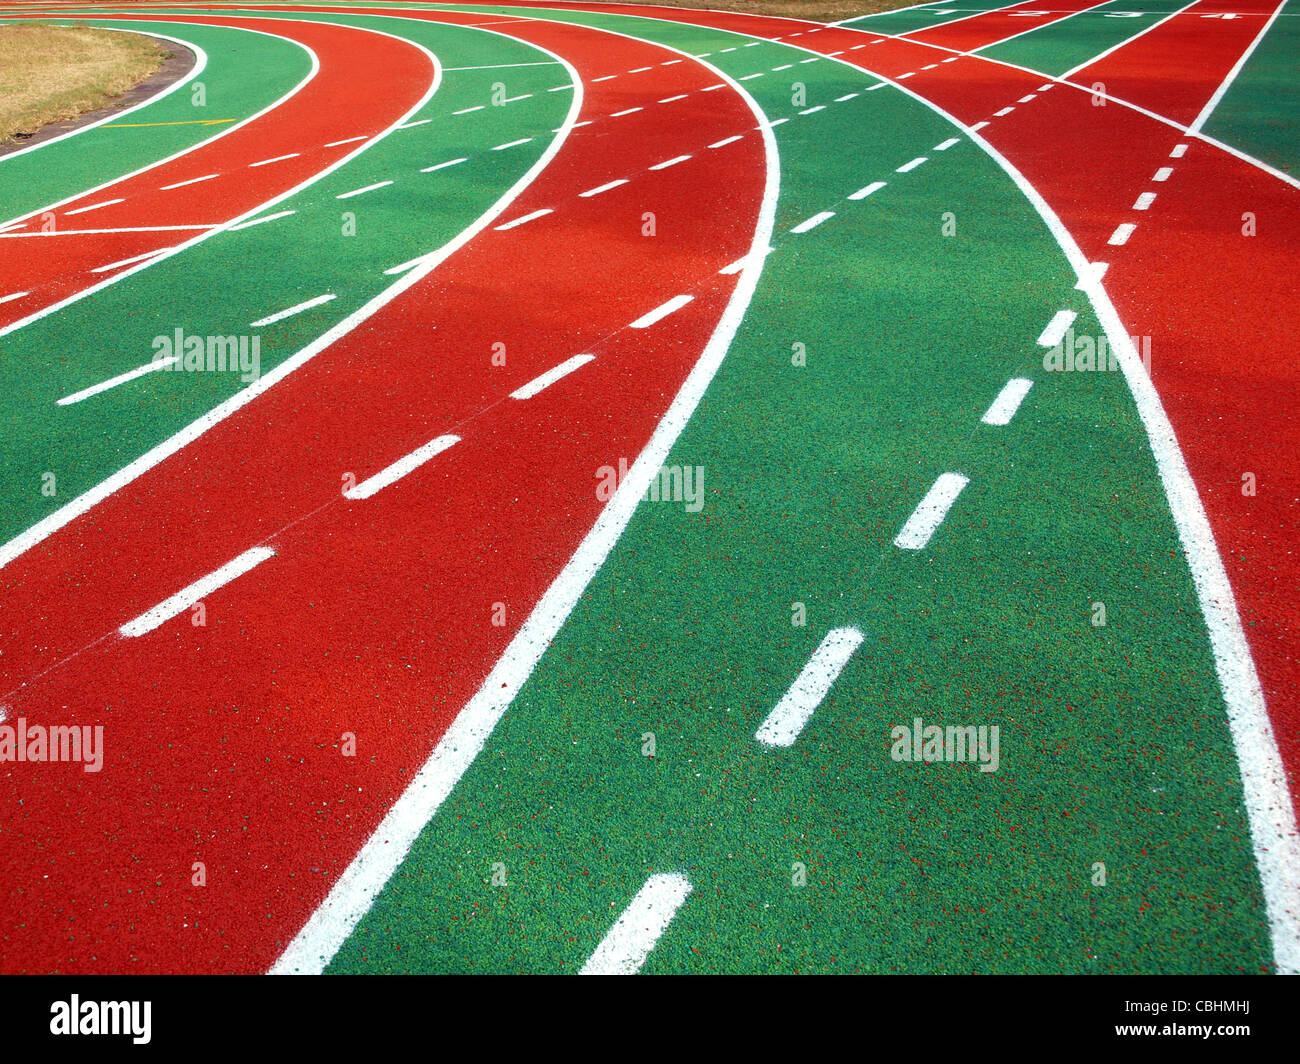 Corsa atletica via con il rosso e il verde della superficie in gomma bianca e marcature di corsia Foto Stock